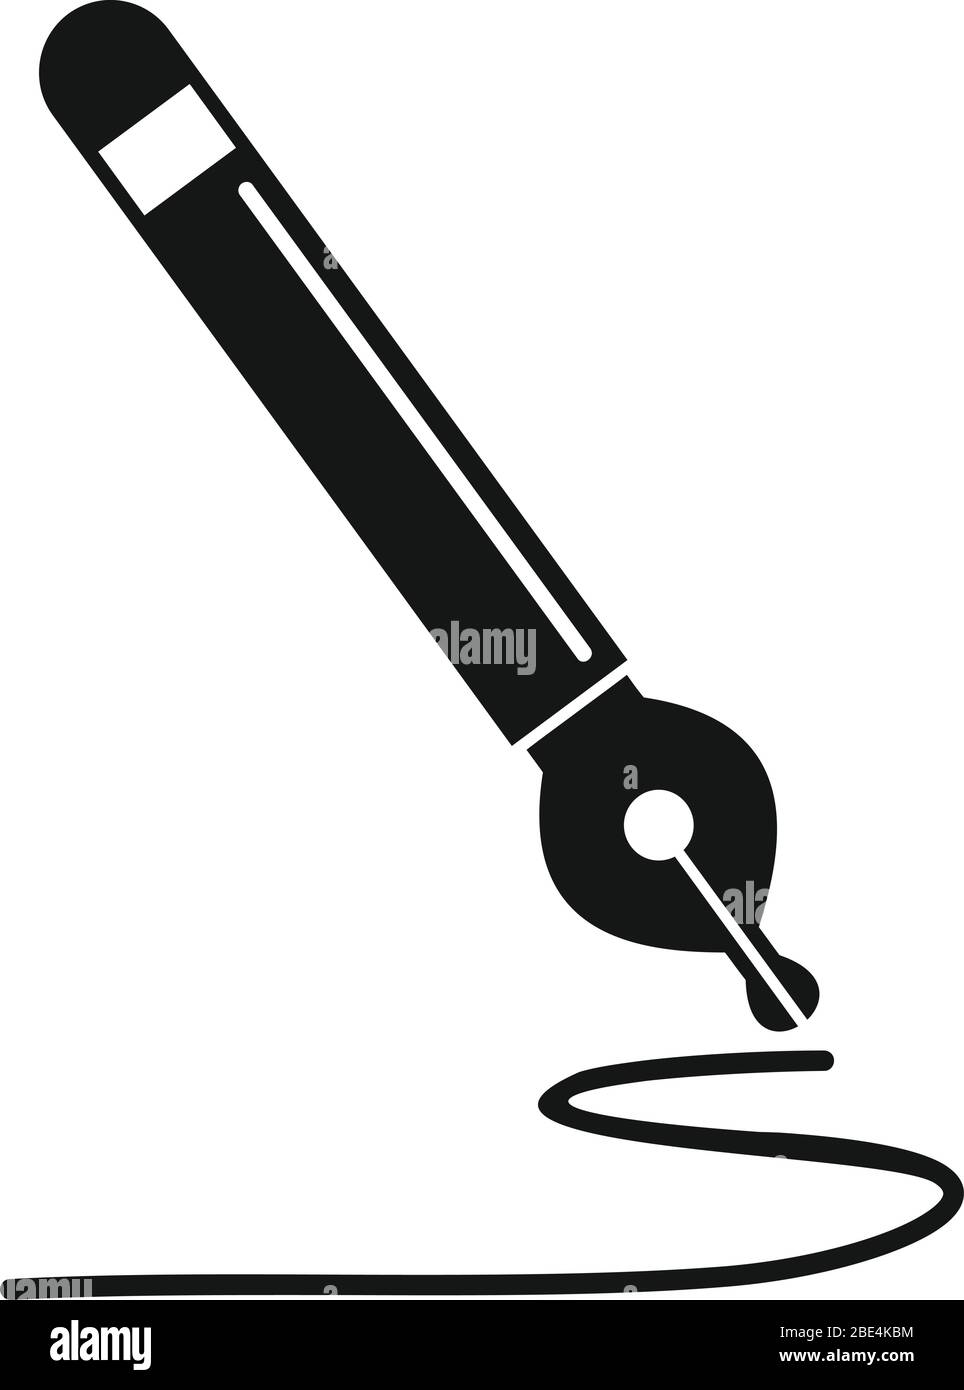 Icona penna inchiostro di scrittura. Semplice illustrazione dell'icona vettoriale della penna di inchiostro per il disegno di fotoricettore isolata su sfondo bianco Illustrazione Vettoriale